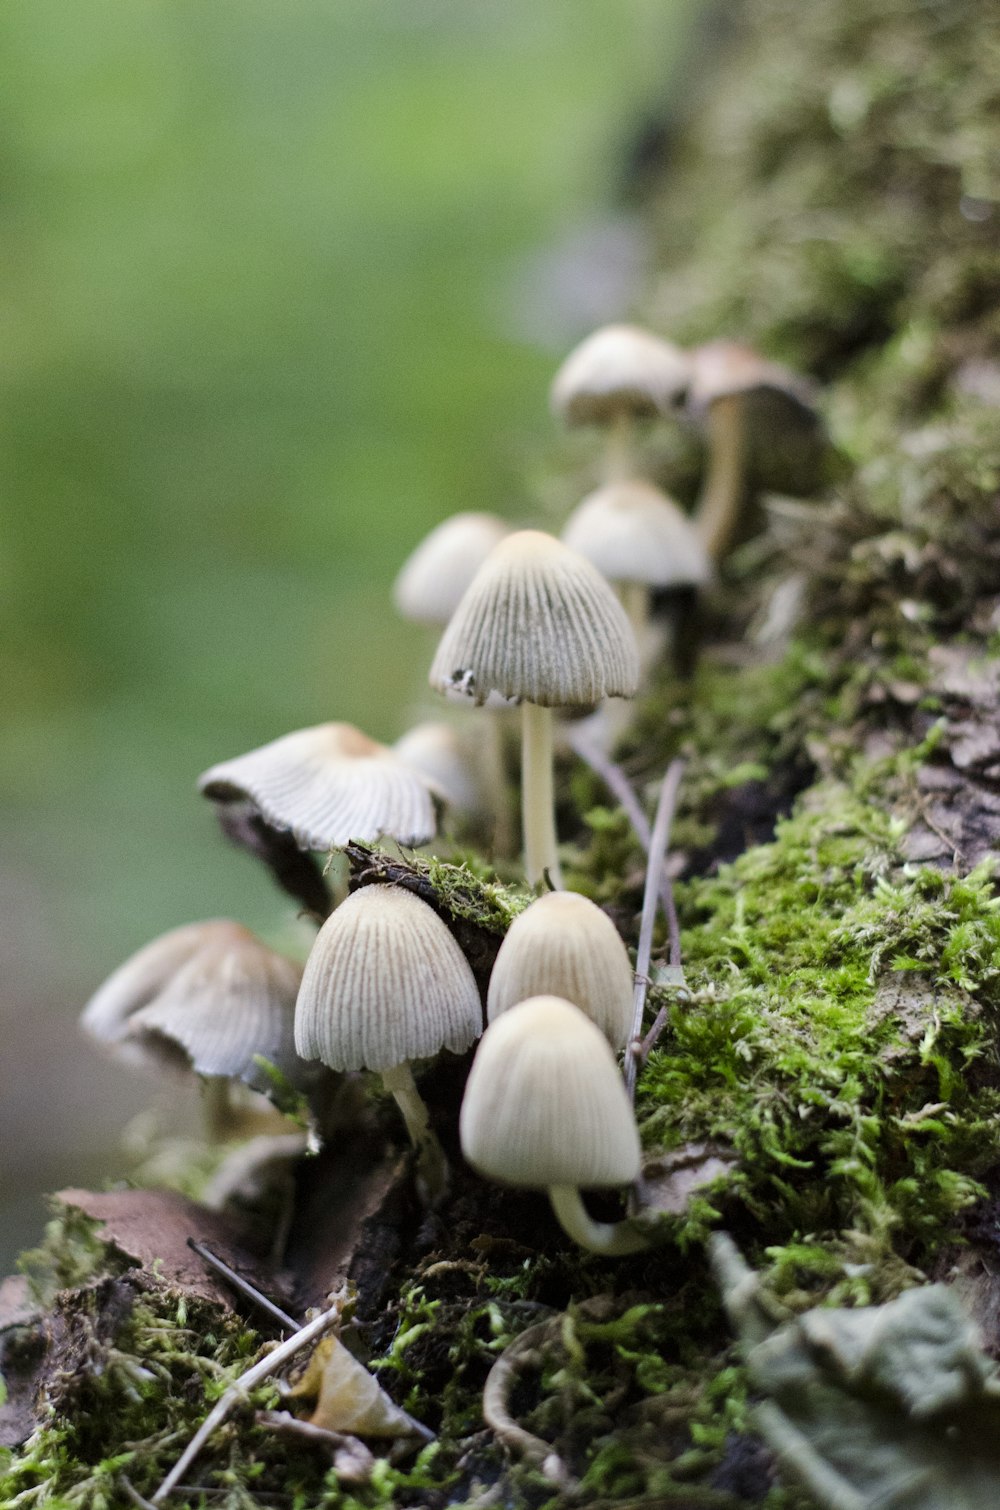 funghi bianchi su erba verde durante il giorno